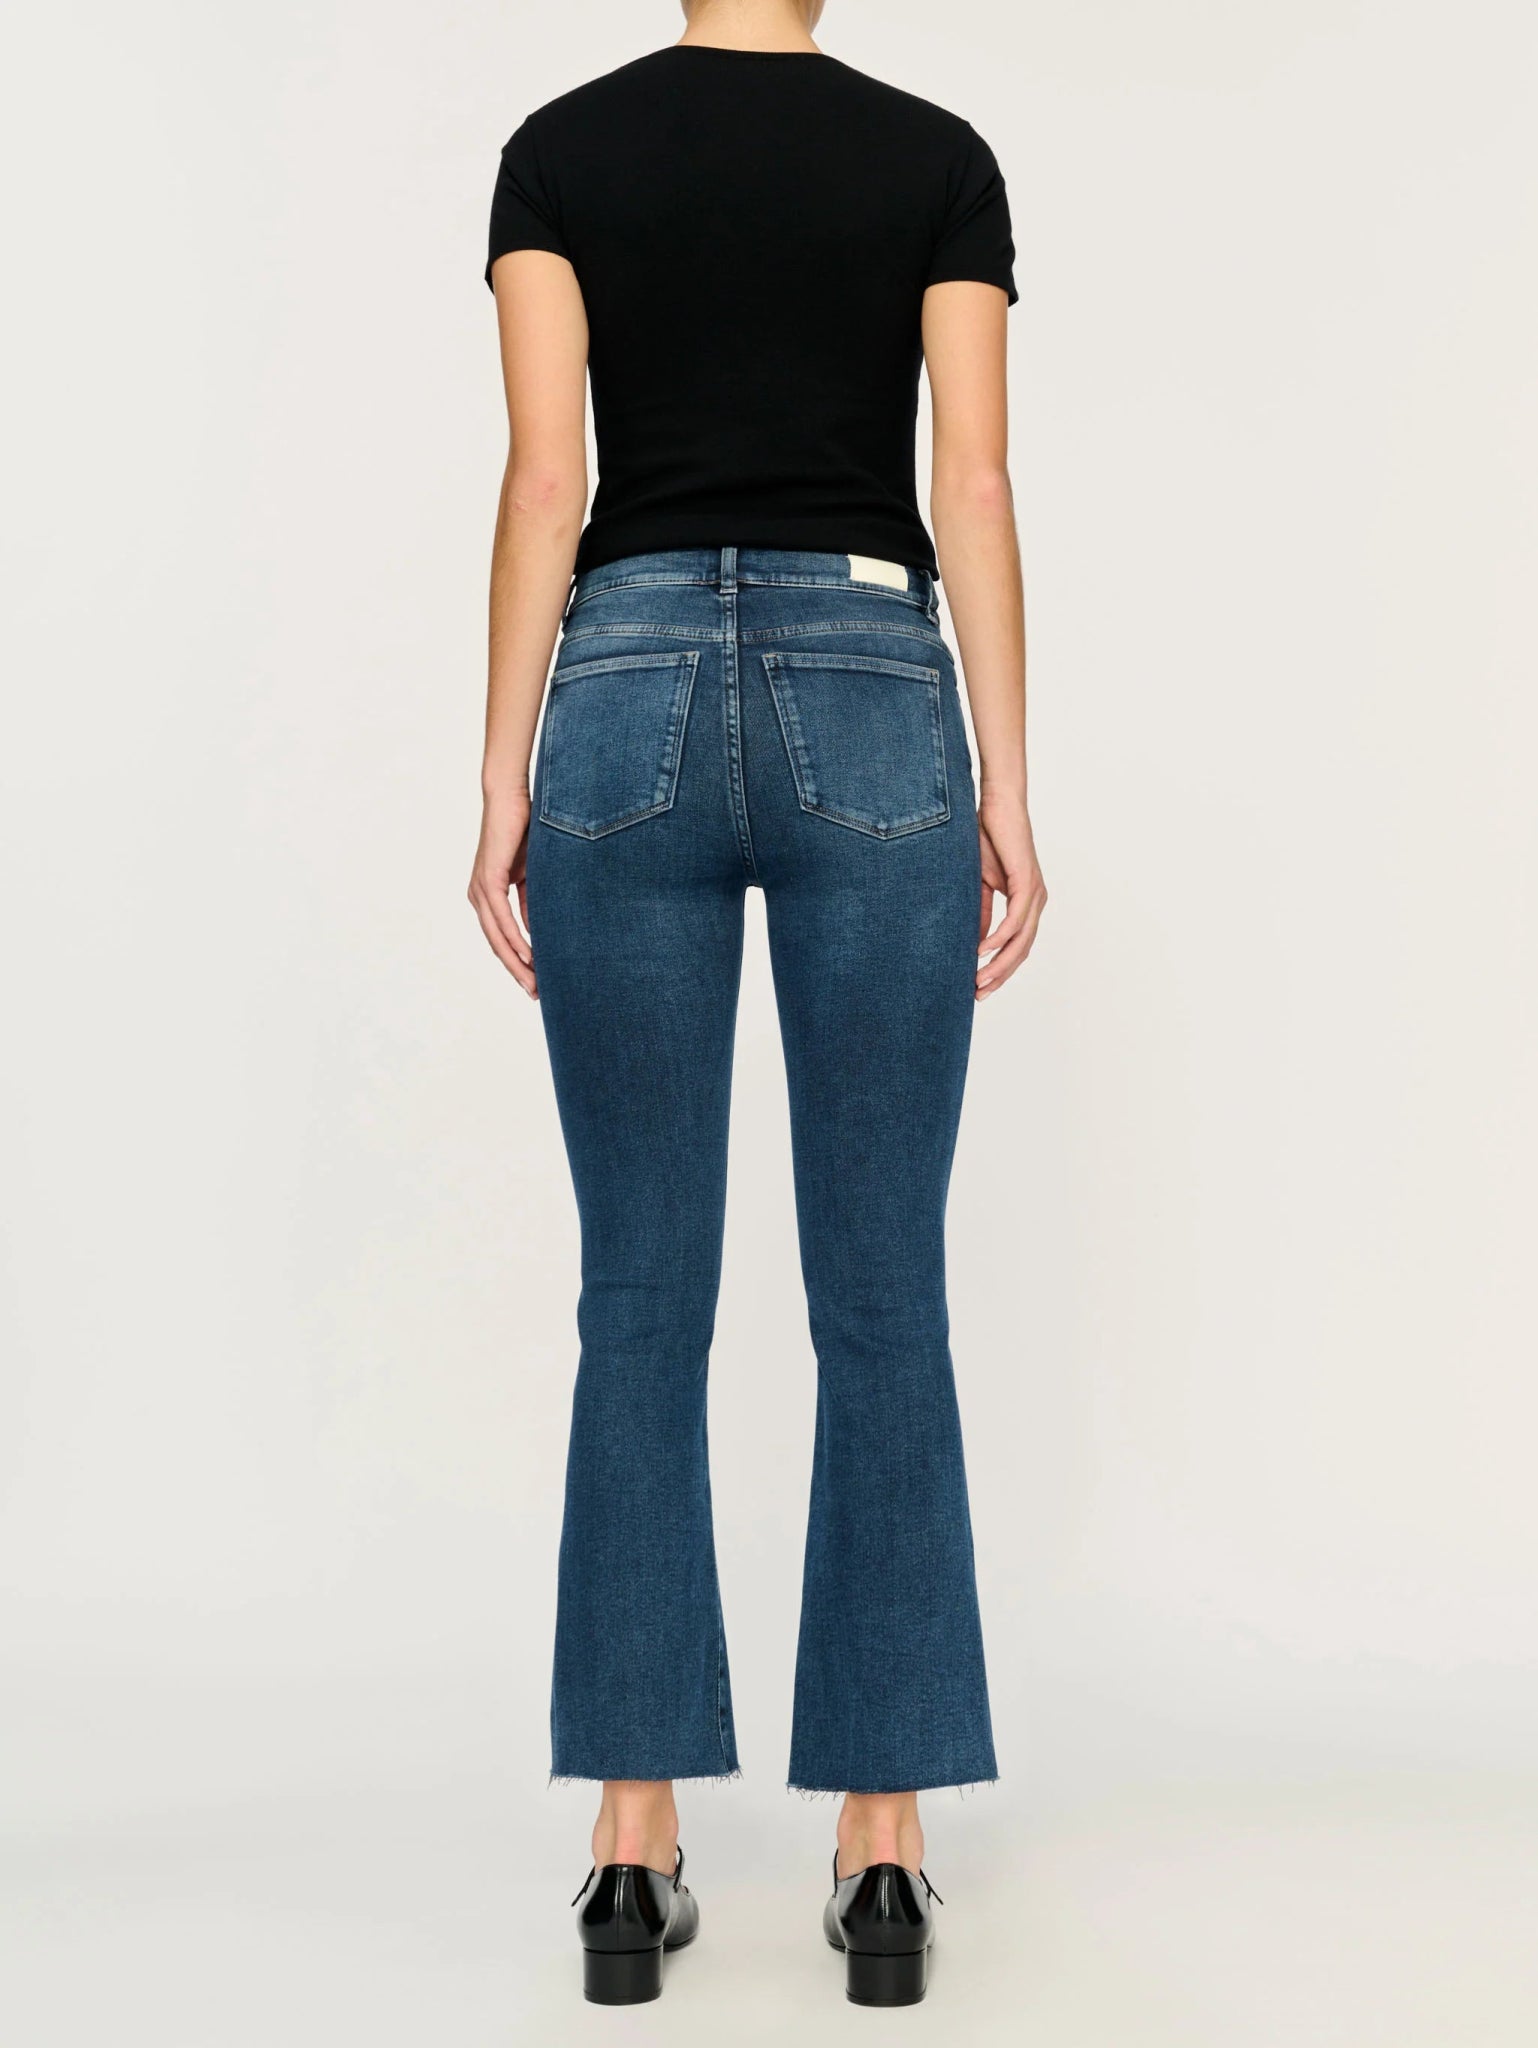 DL1961 Bridget Boot High Rise Jeans in Seacliff - Estilo Boutique